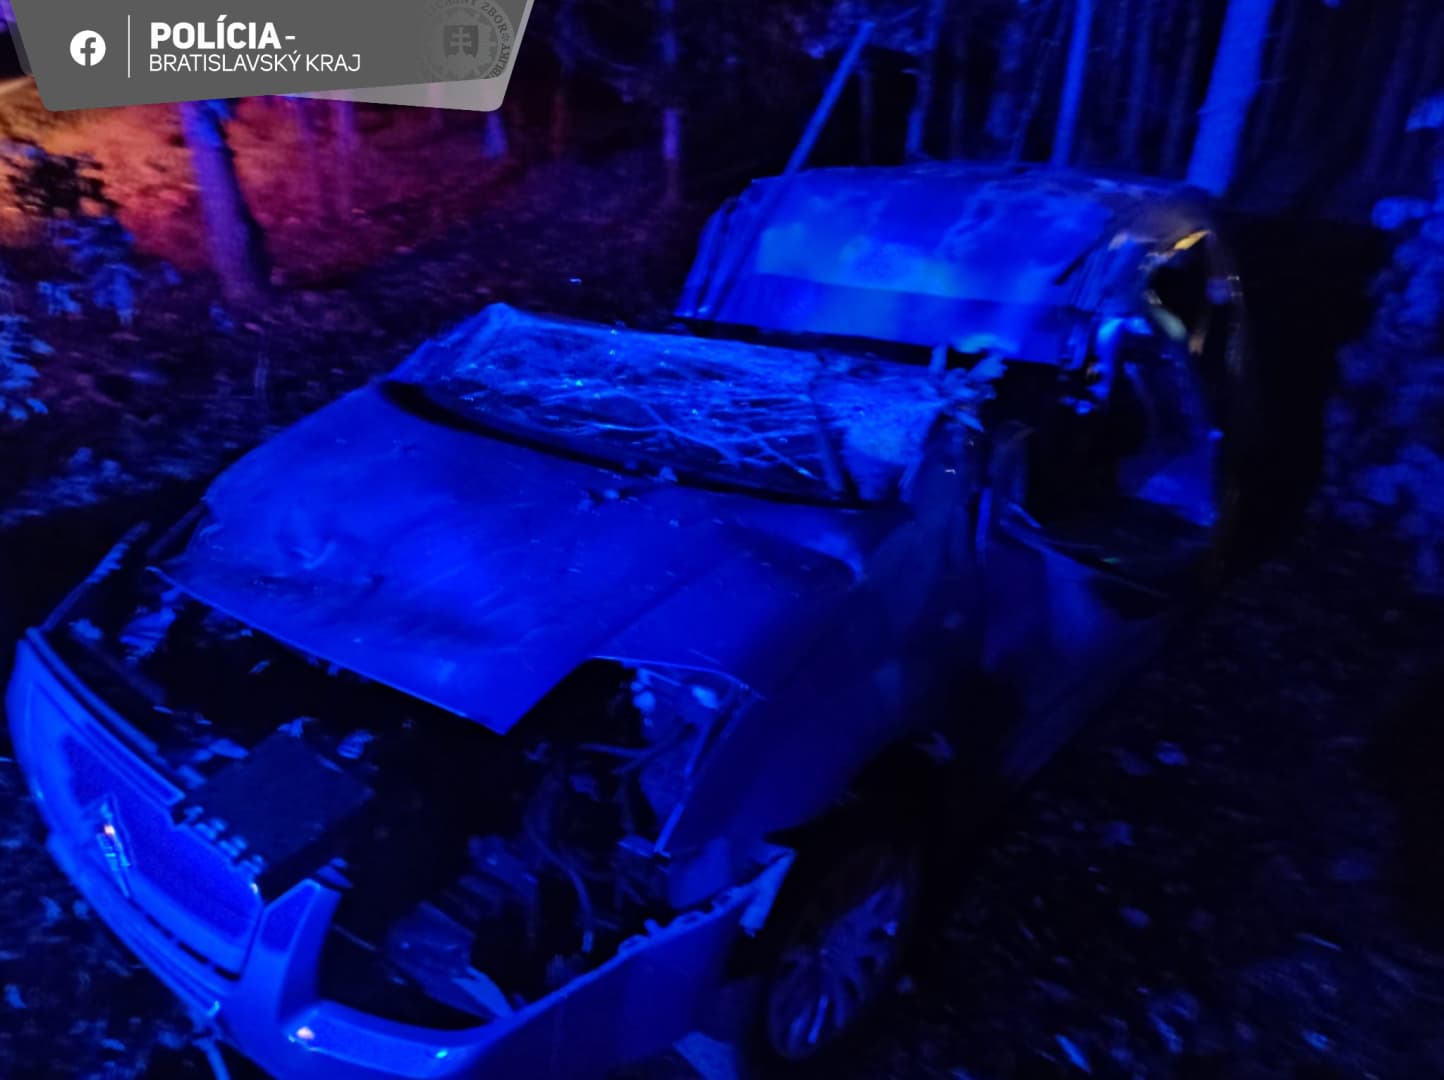 BALESET: Lerepült az útról a Citroen, a sofőr nem élte túl